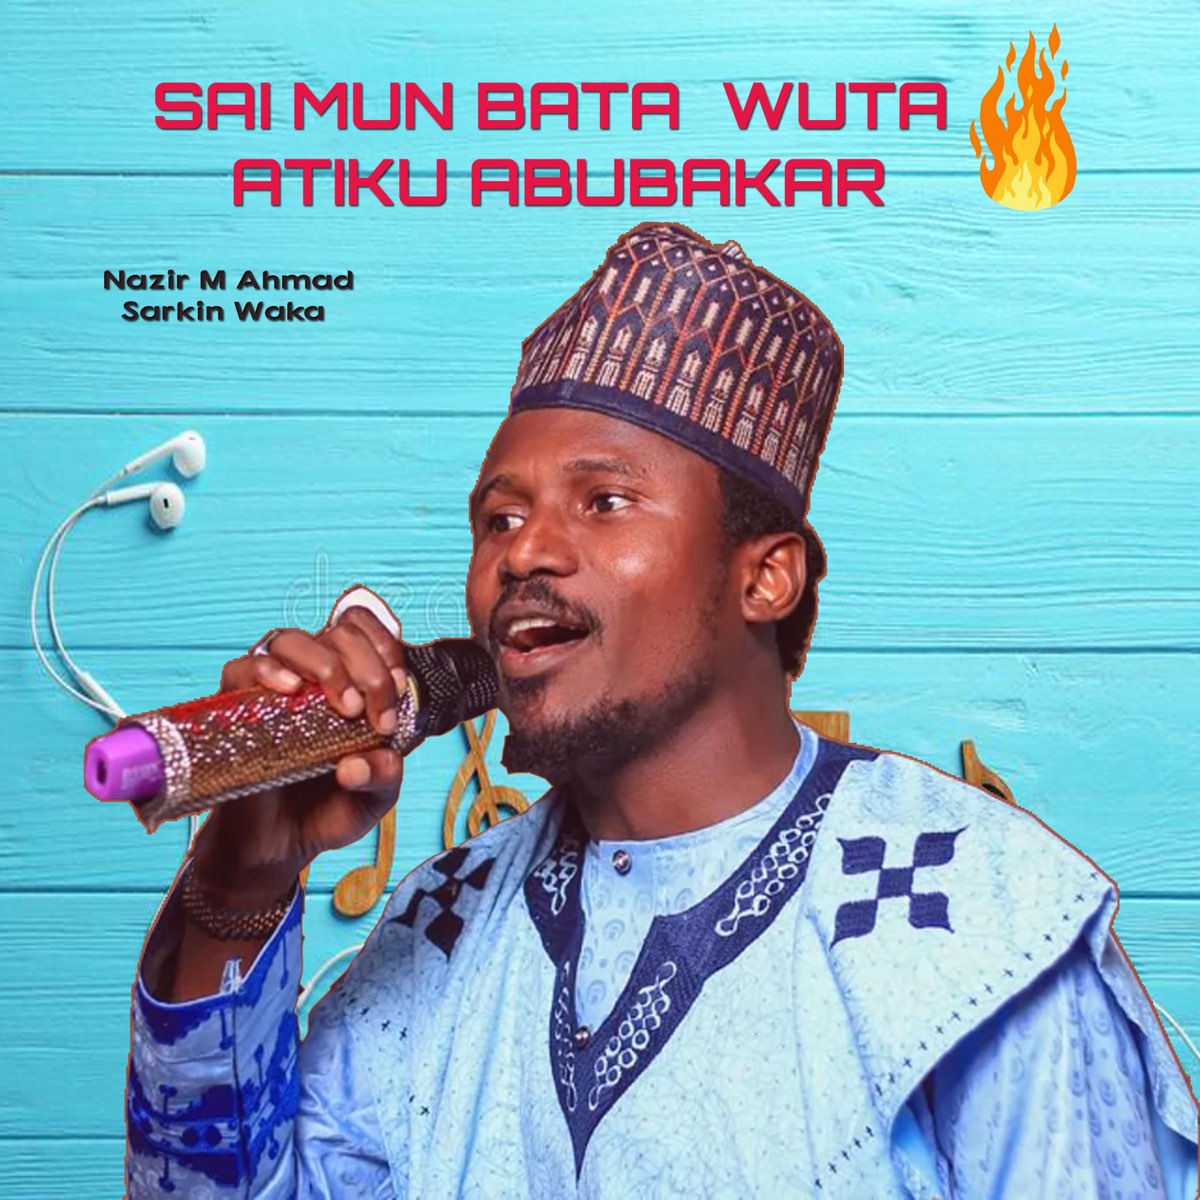 Sai Mun Bata Wuta Atiku Abubakar - Single by Nazir M Ahmad Sarkin Waka on Apple Music